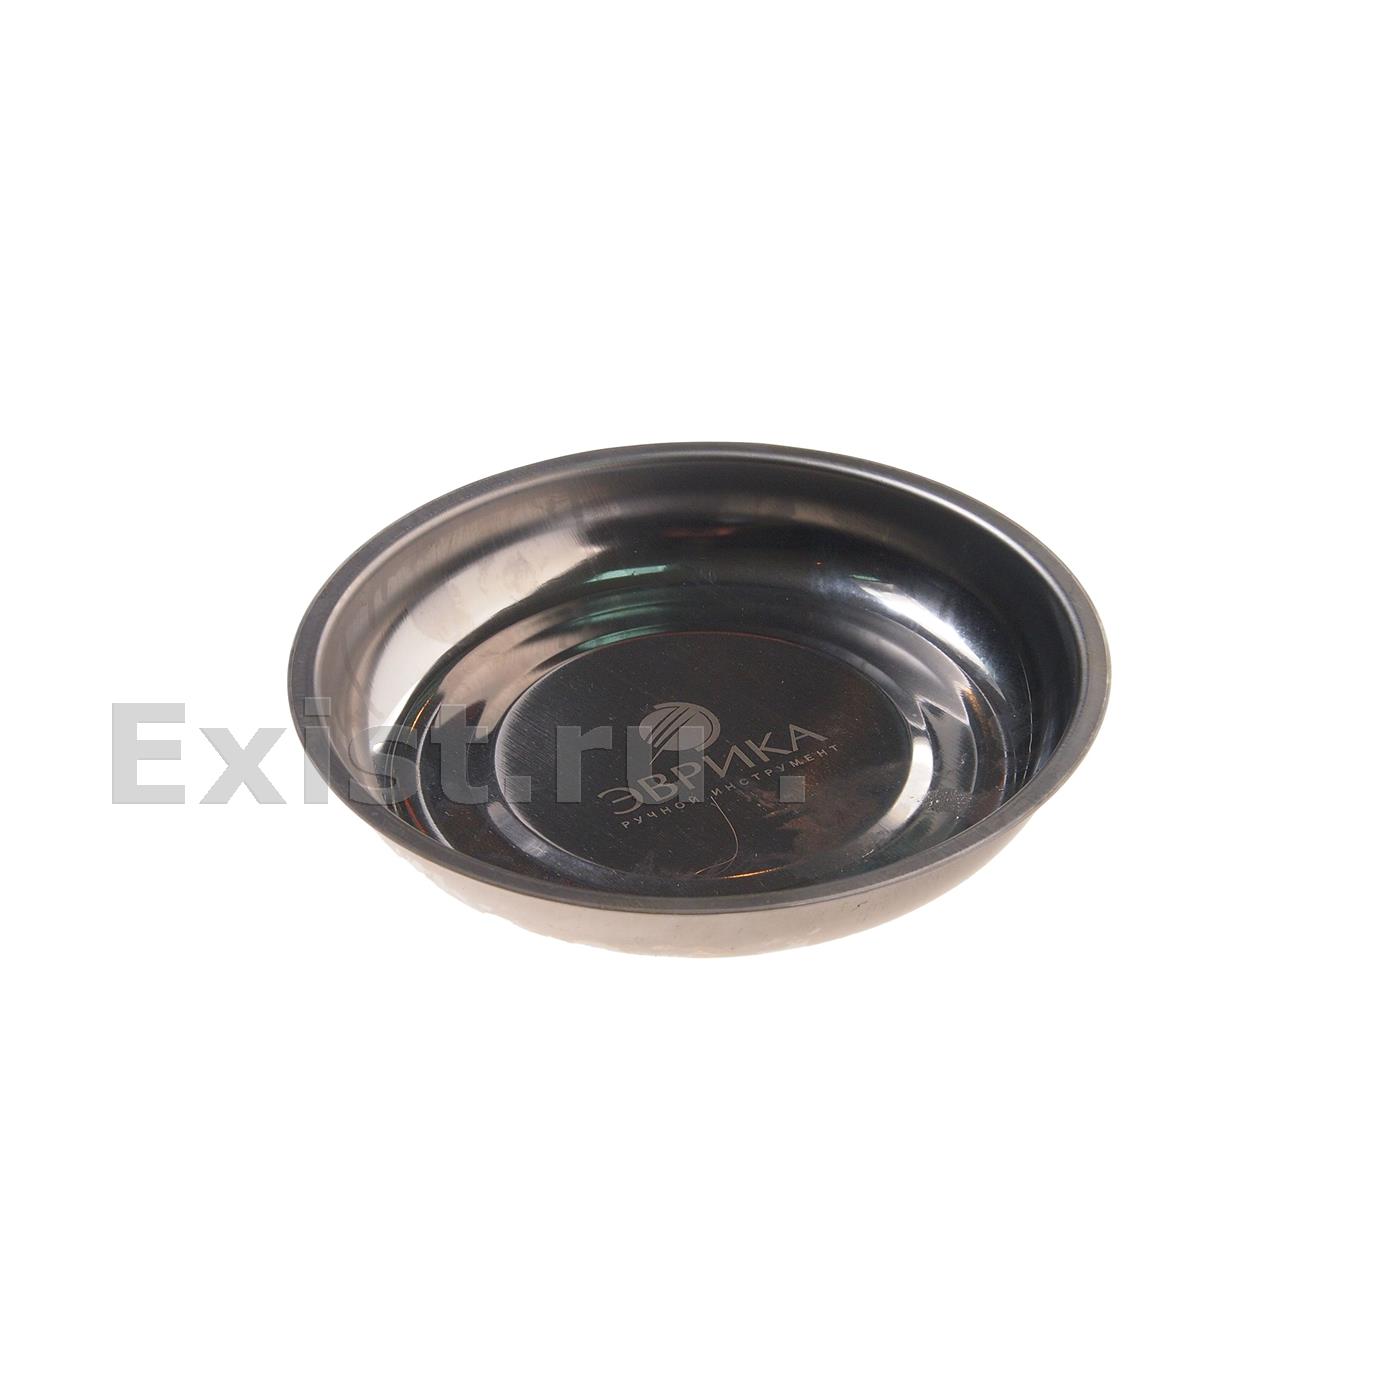 Поддон er-51028 для хранения крепежных элементов, магнитный круглый, с 1-им магнитом 150 мм. эврика 140